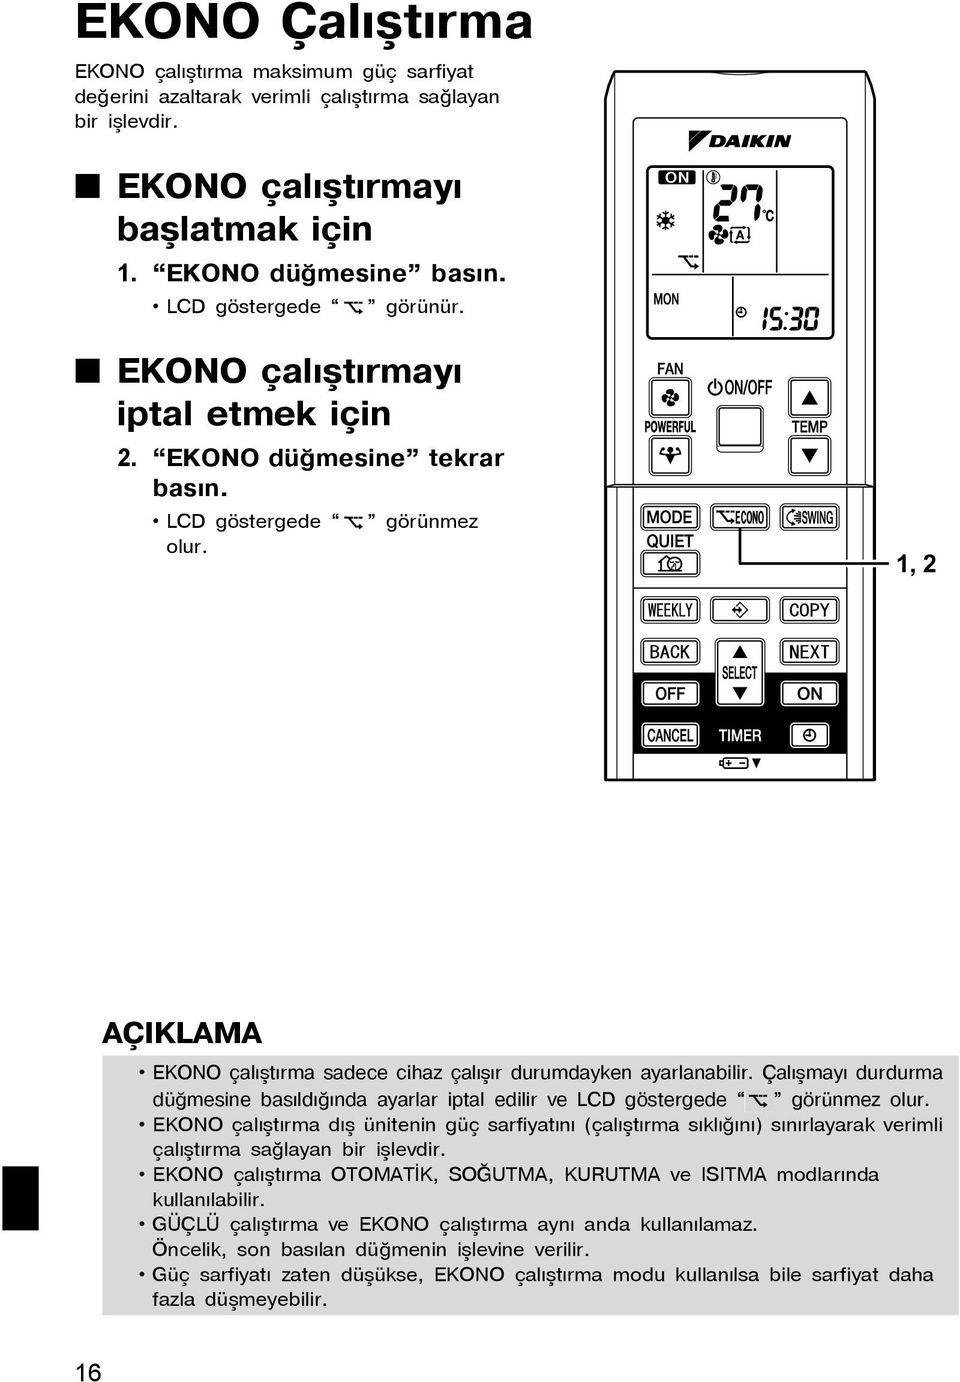 Çalýþmayý durdurma düðmesine basýldýðýnda ayarlar iptal edilir ve LCD göstergede görünmez olur.